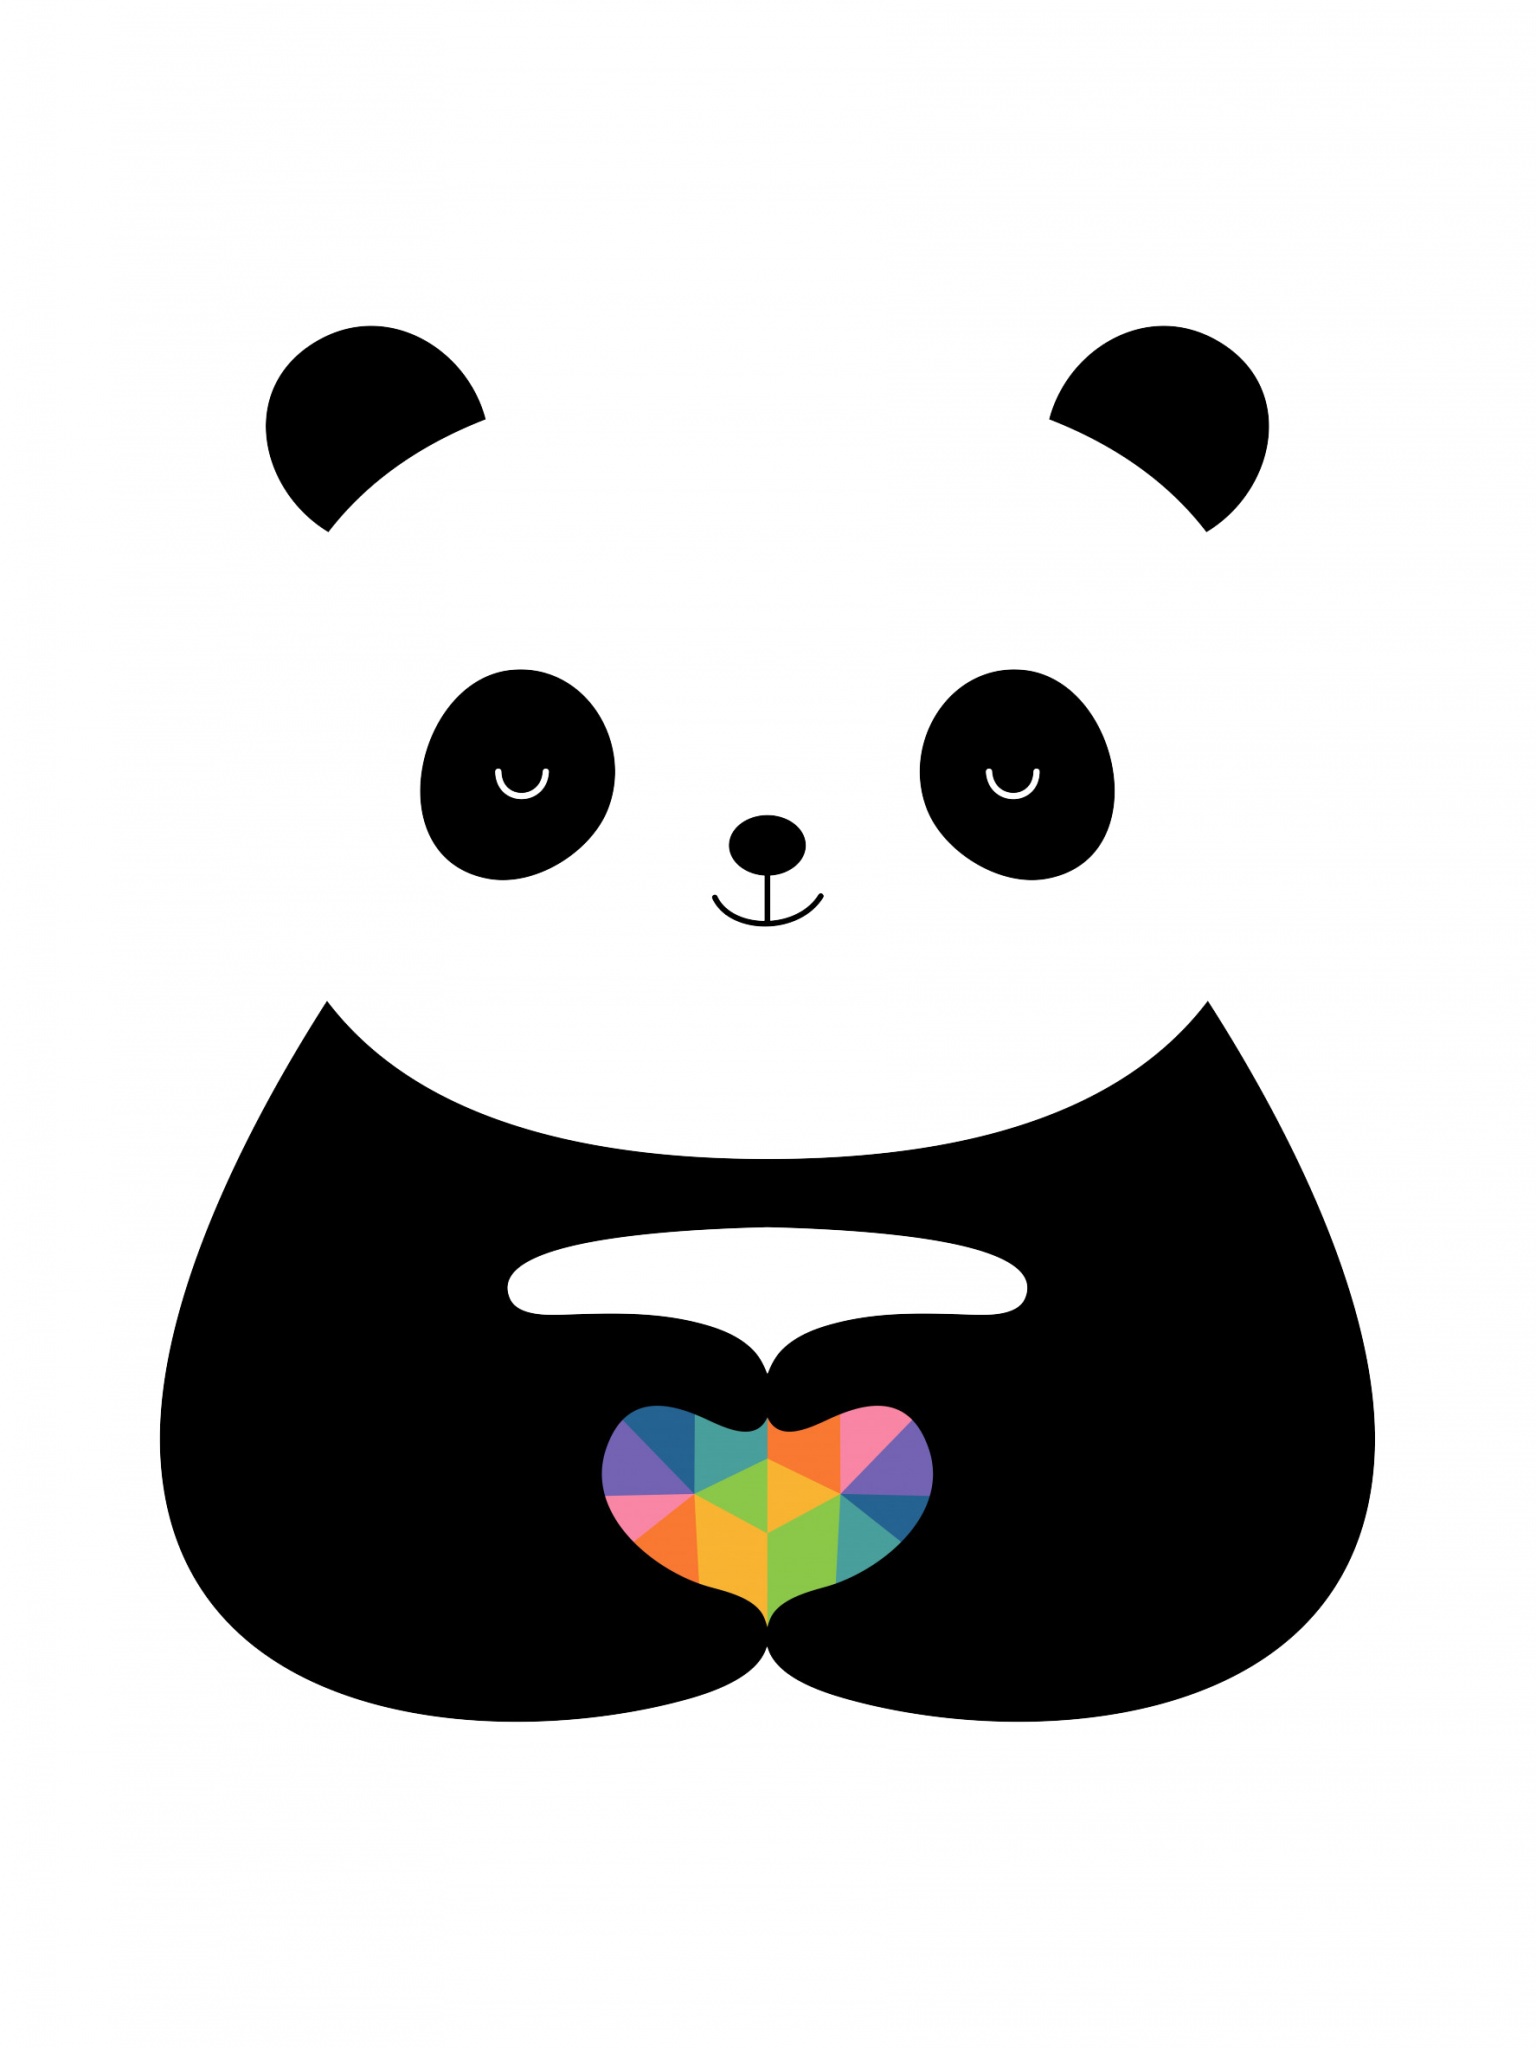 Cute panda Wallpaper 4K, Love heart, Cute